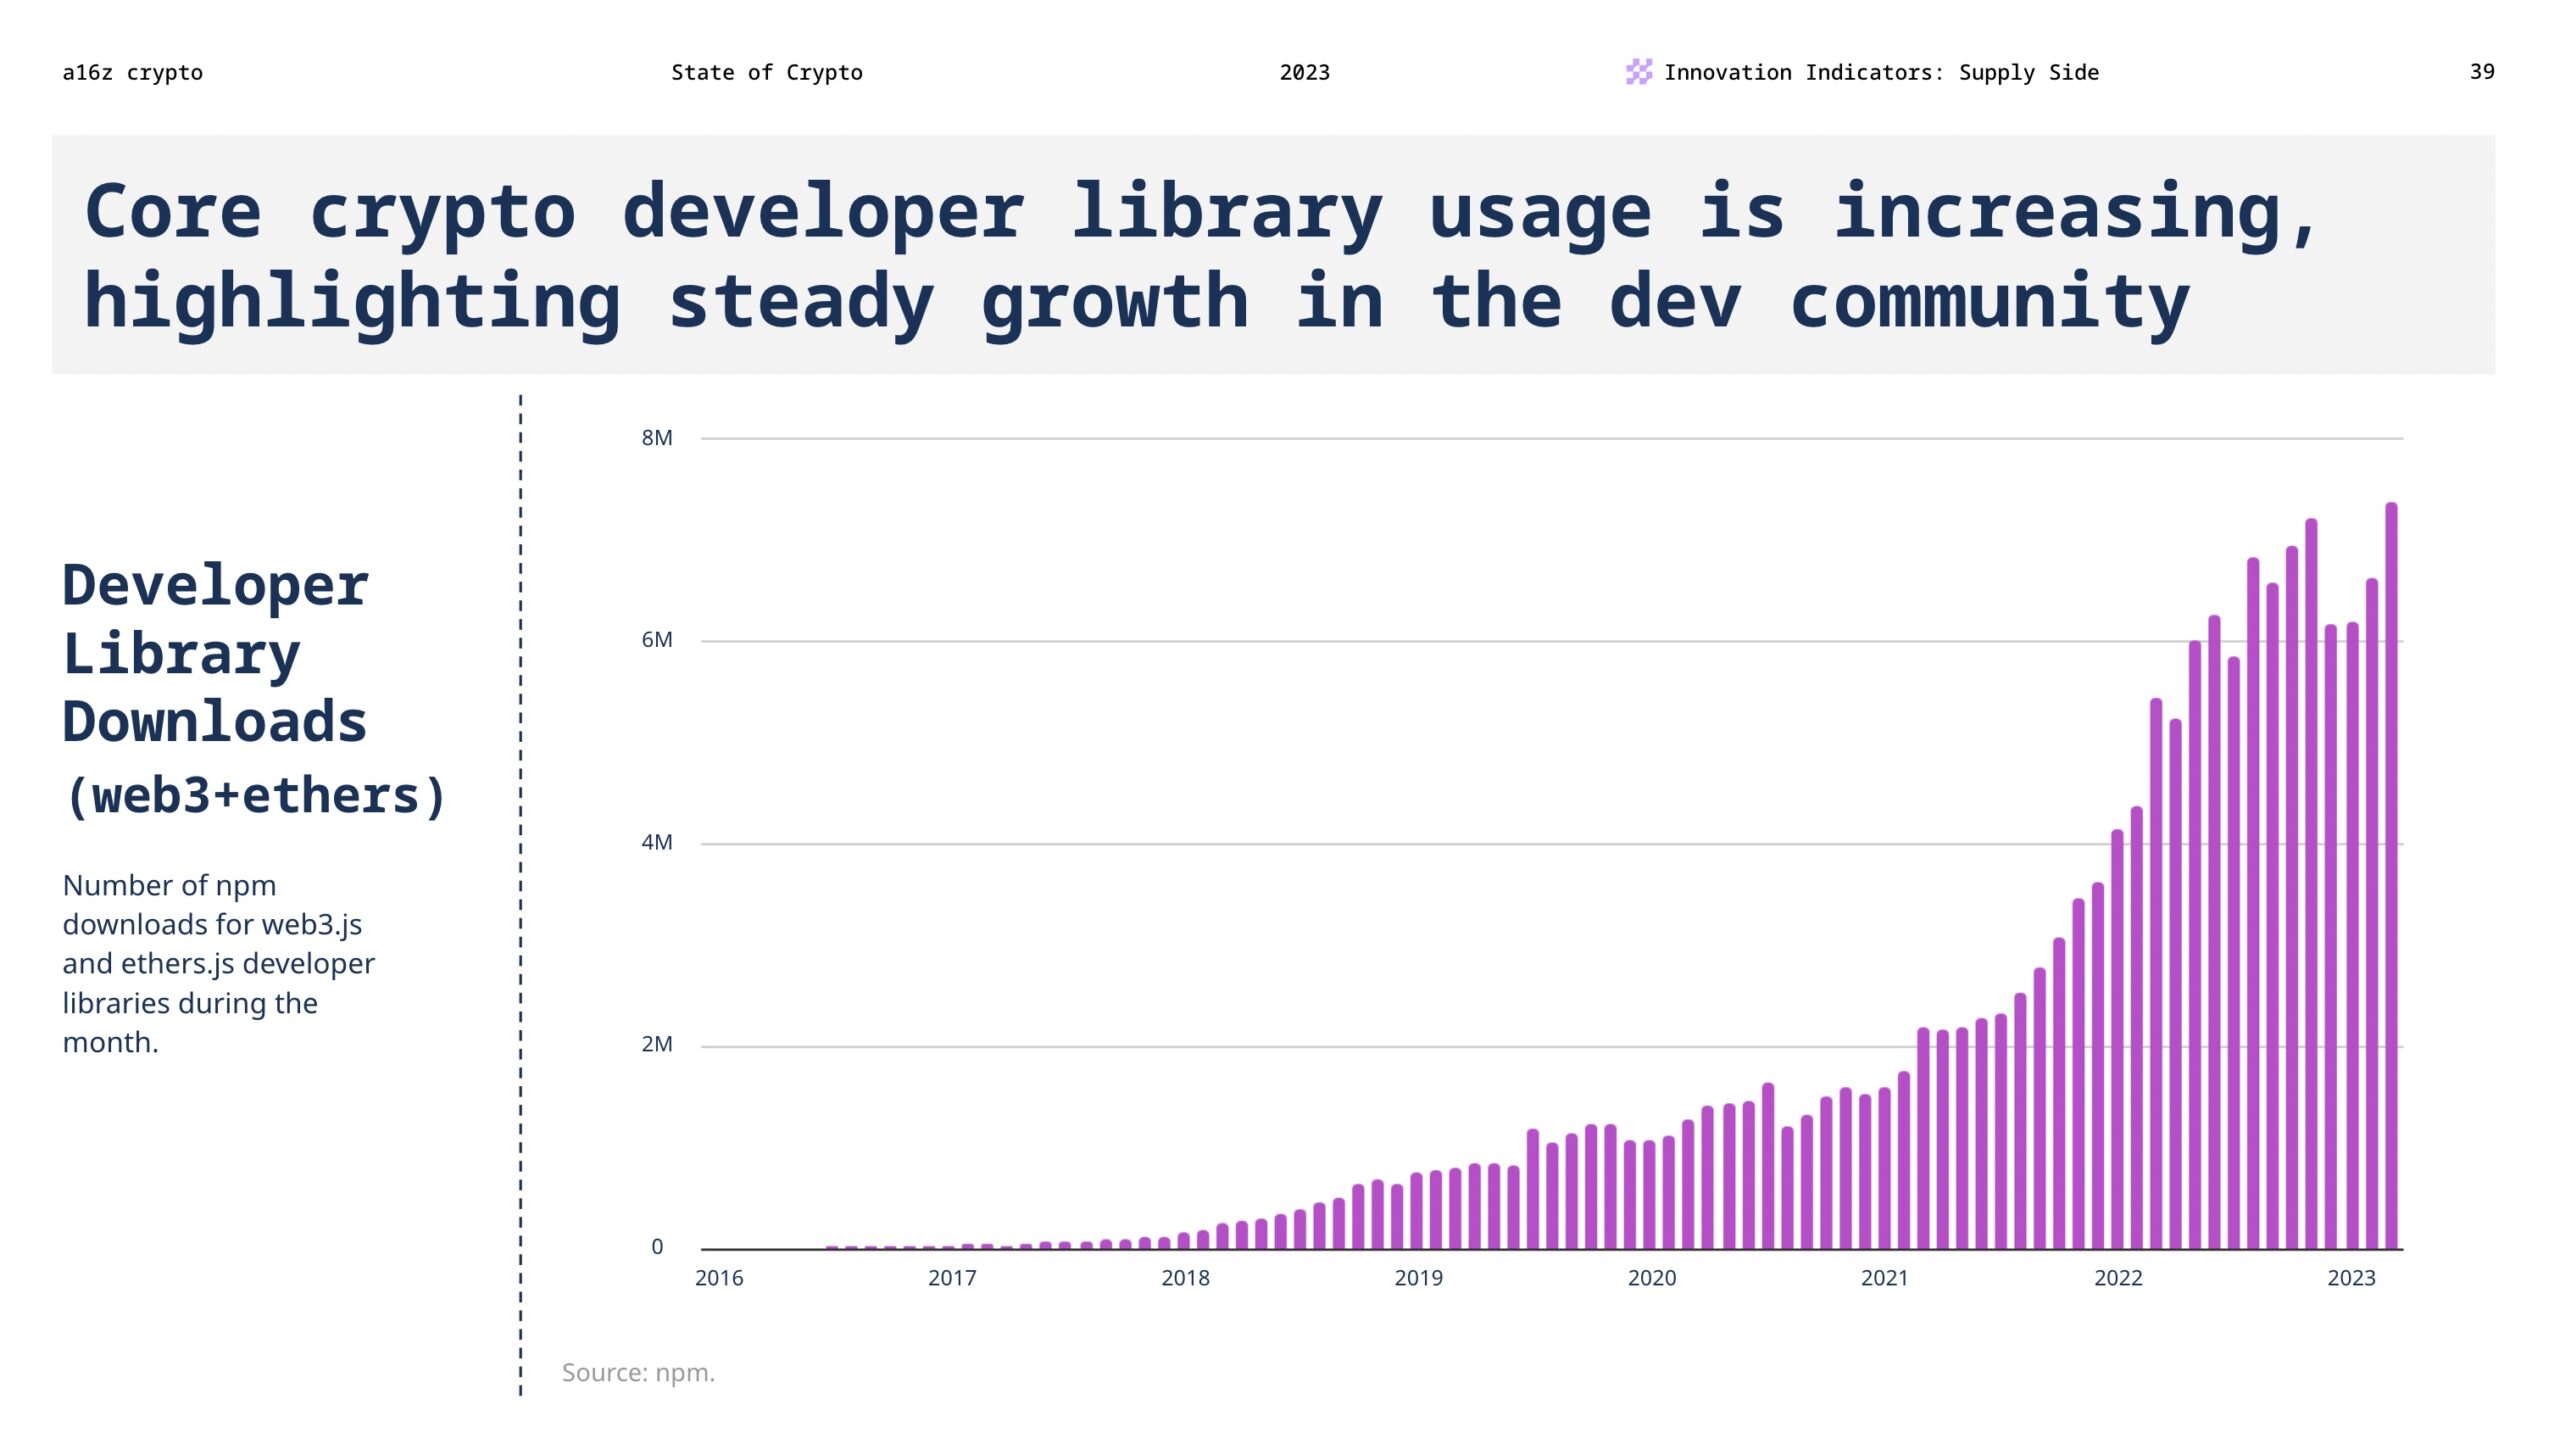 Việc sử dụng thư viện dành cho nhà phát triển tiền điện tử cốt lõi đang tăng lên, làm nổi bật sự tăng trưởng ổn định trong cộng đồng